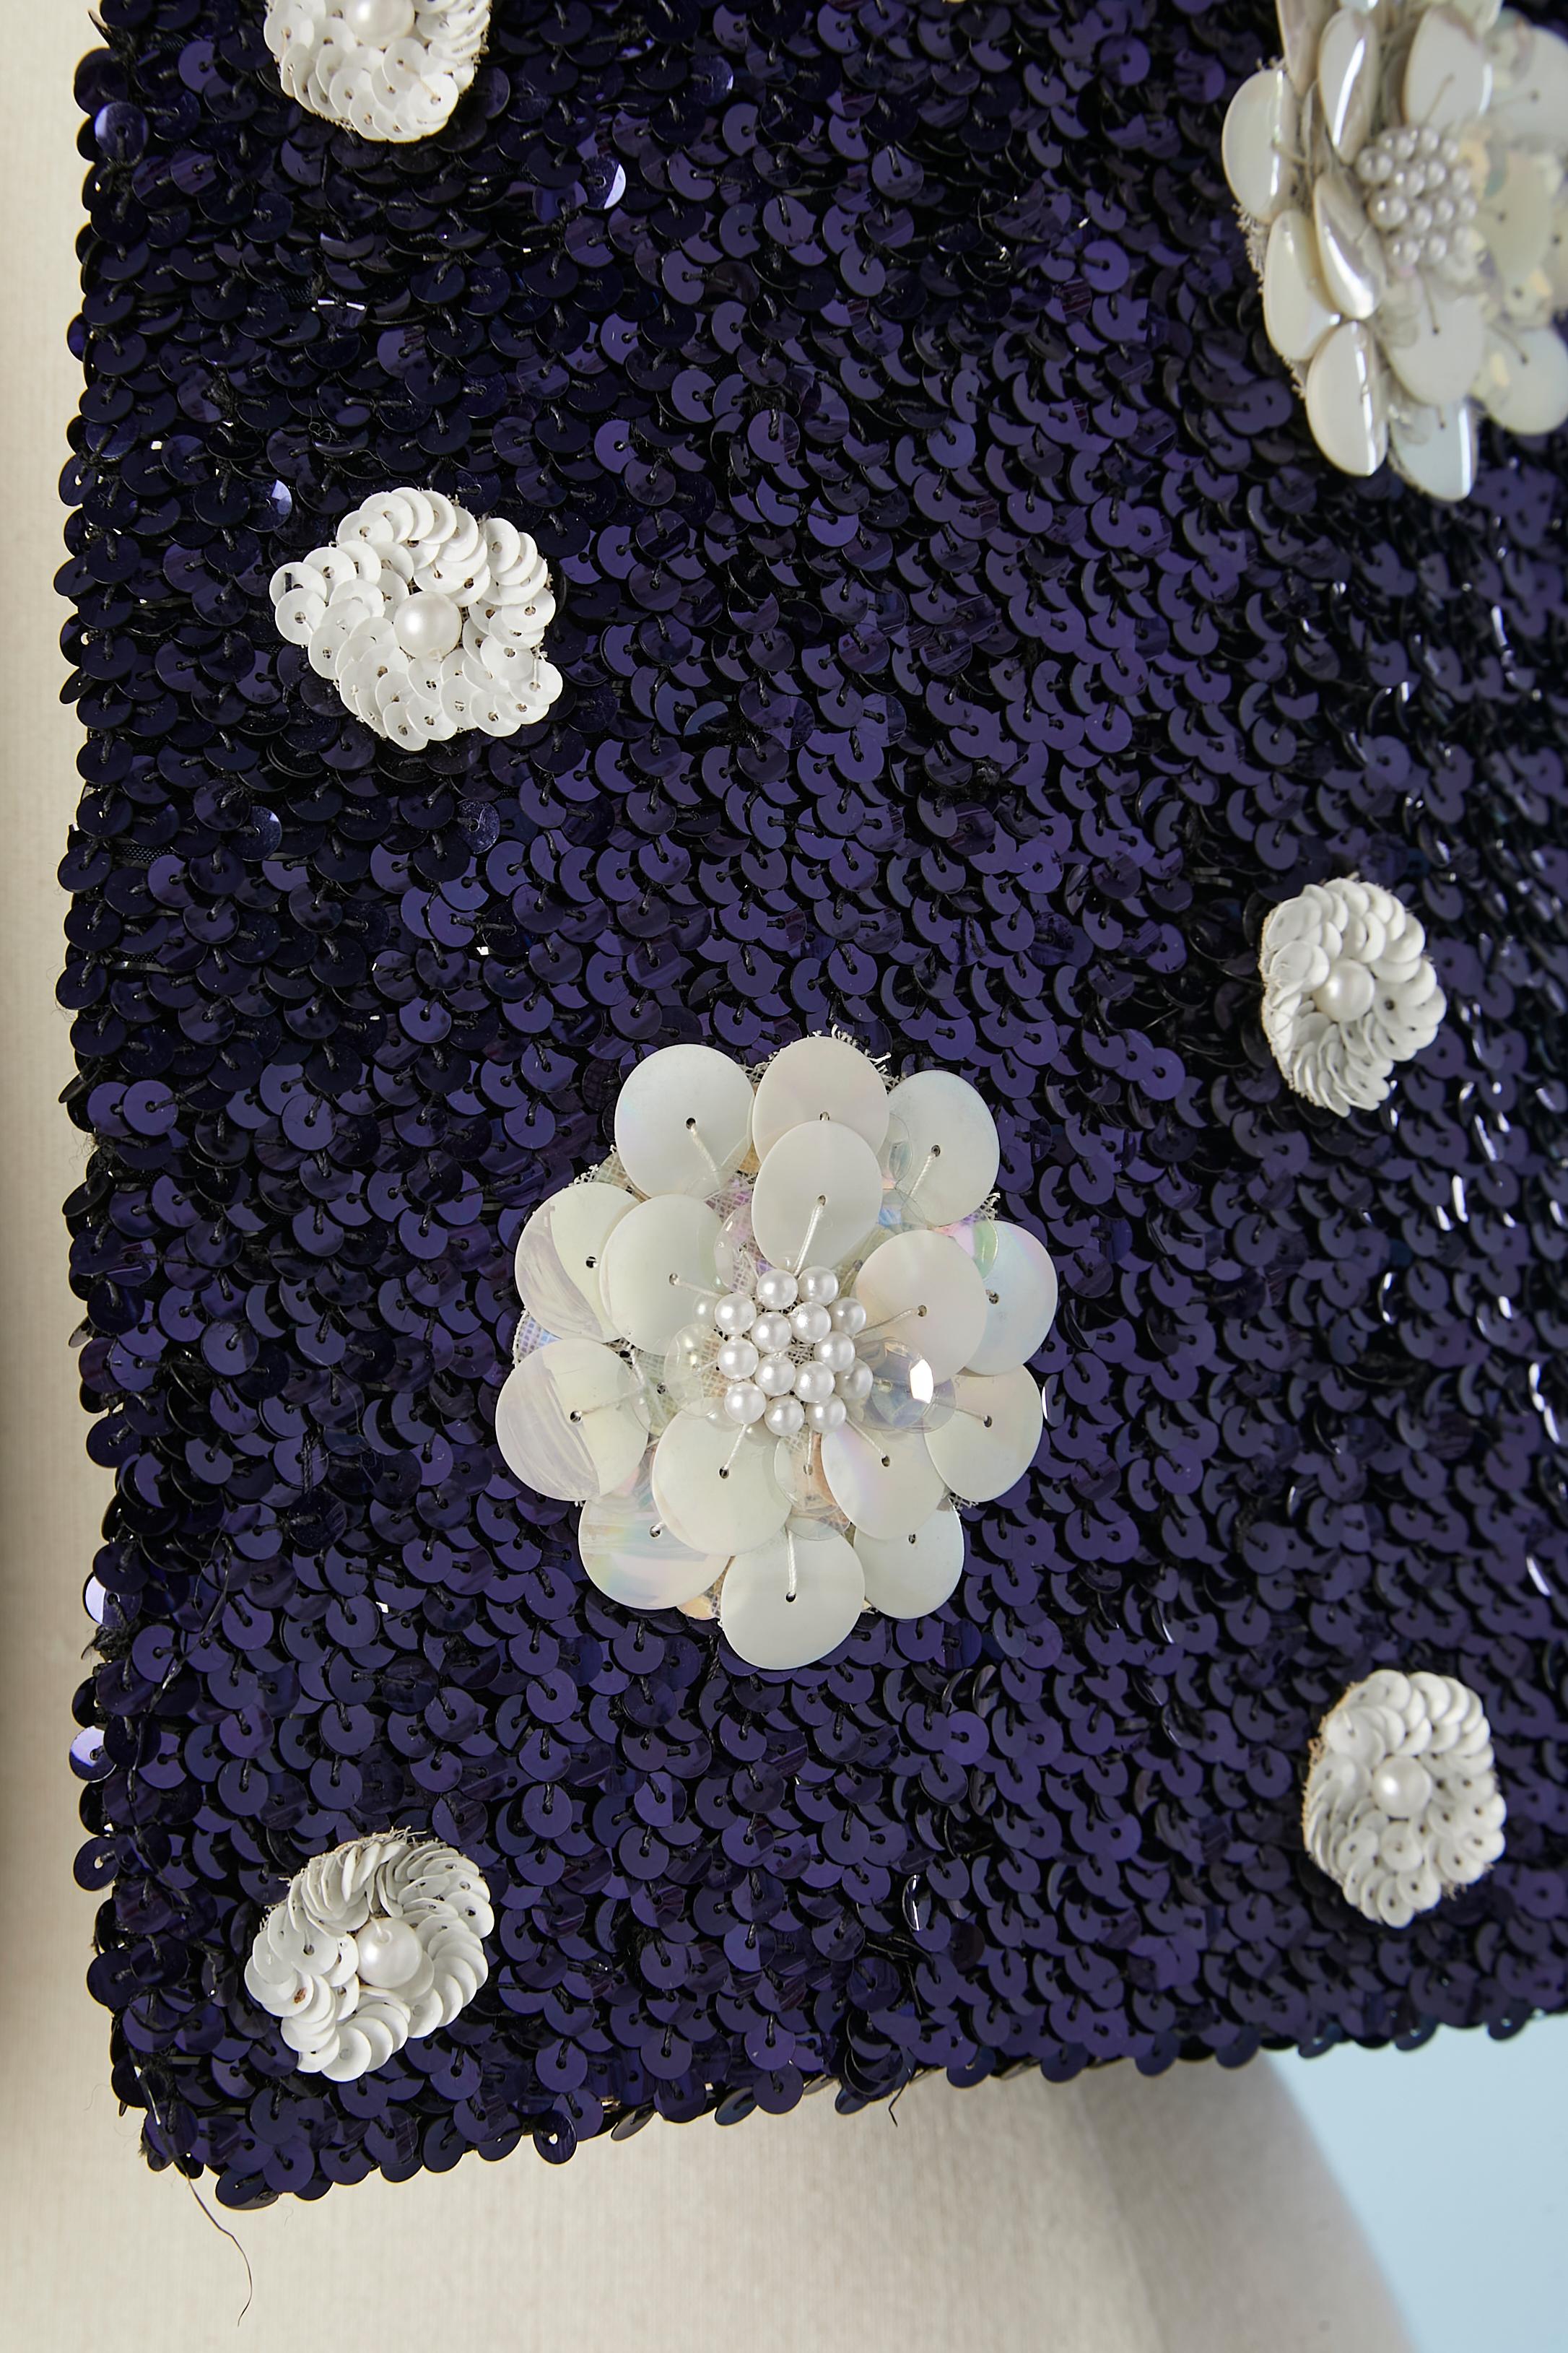 Boléro bord à bord en paillettes bleu marine avec fleurs en paillettes et perles blanches. Pas de composition d'étiquette de tissu mais la doublure est probablement de la rayonne ou de l'acétate. 
TAILLE M 